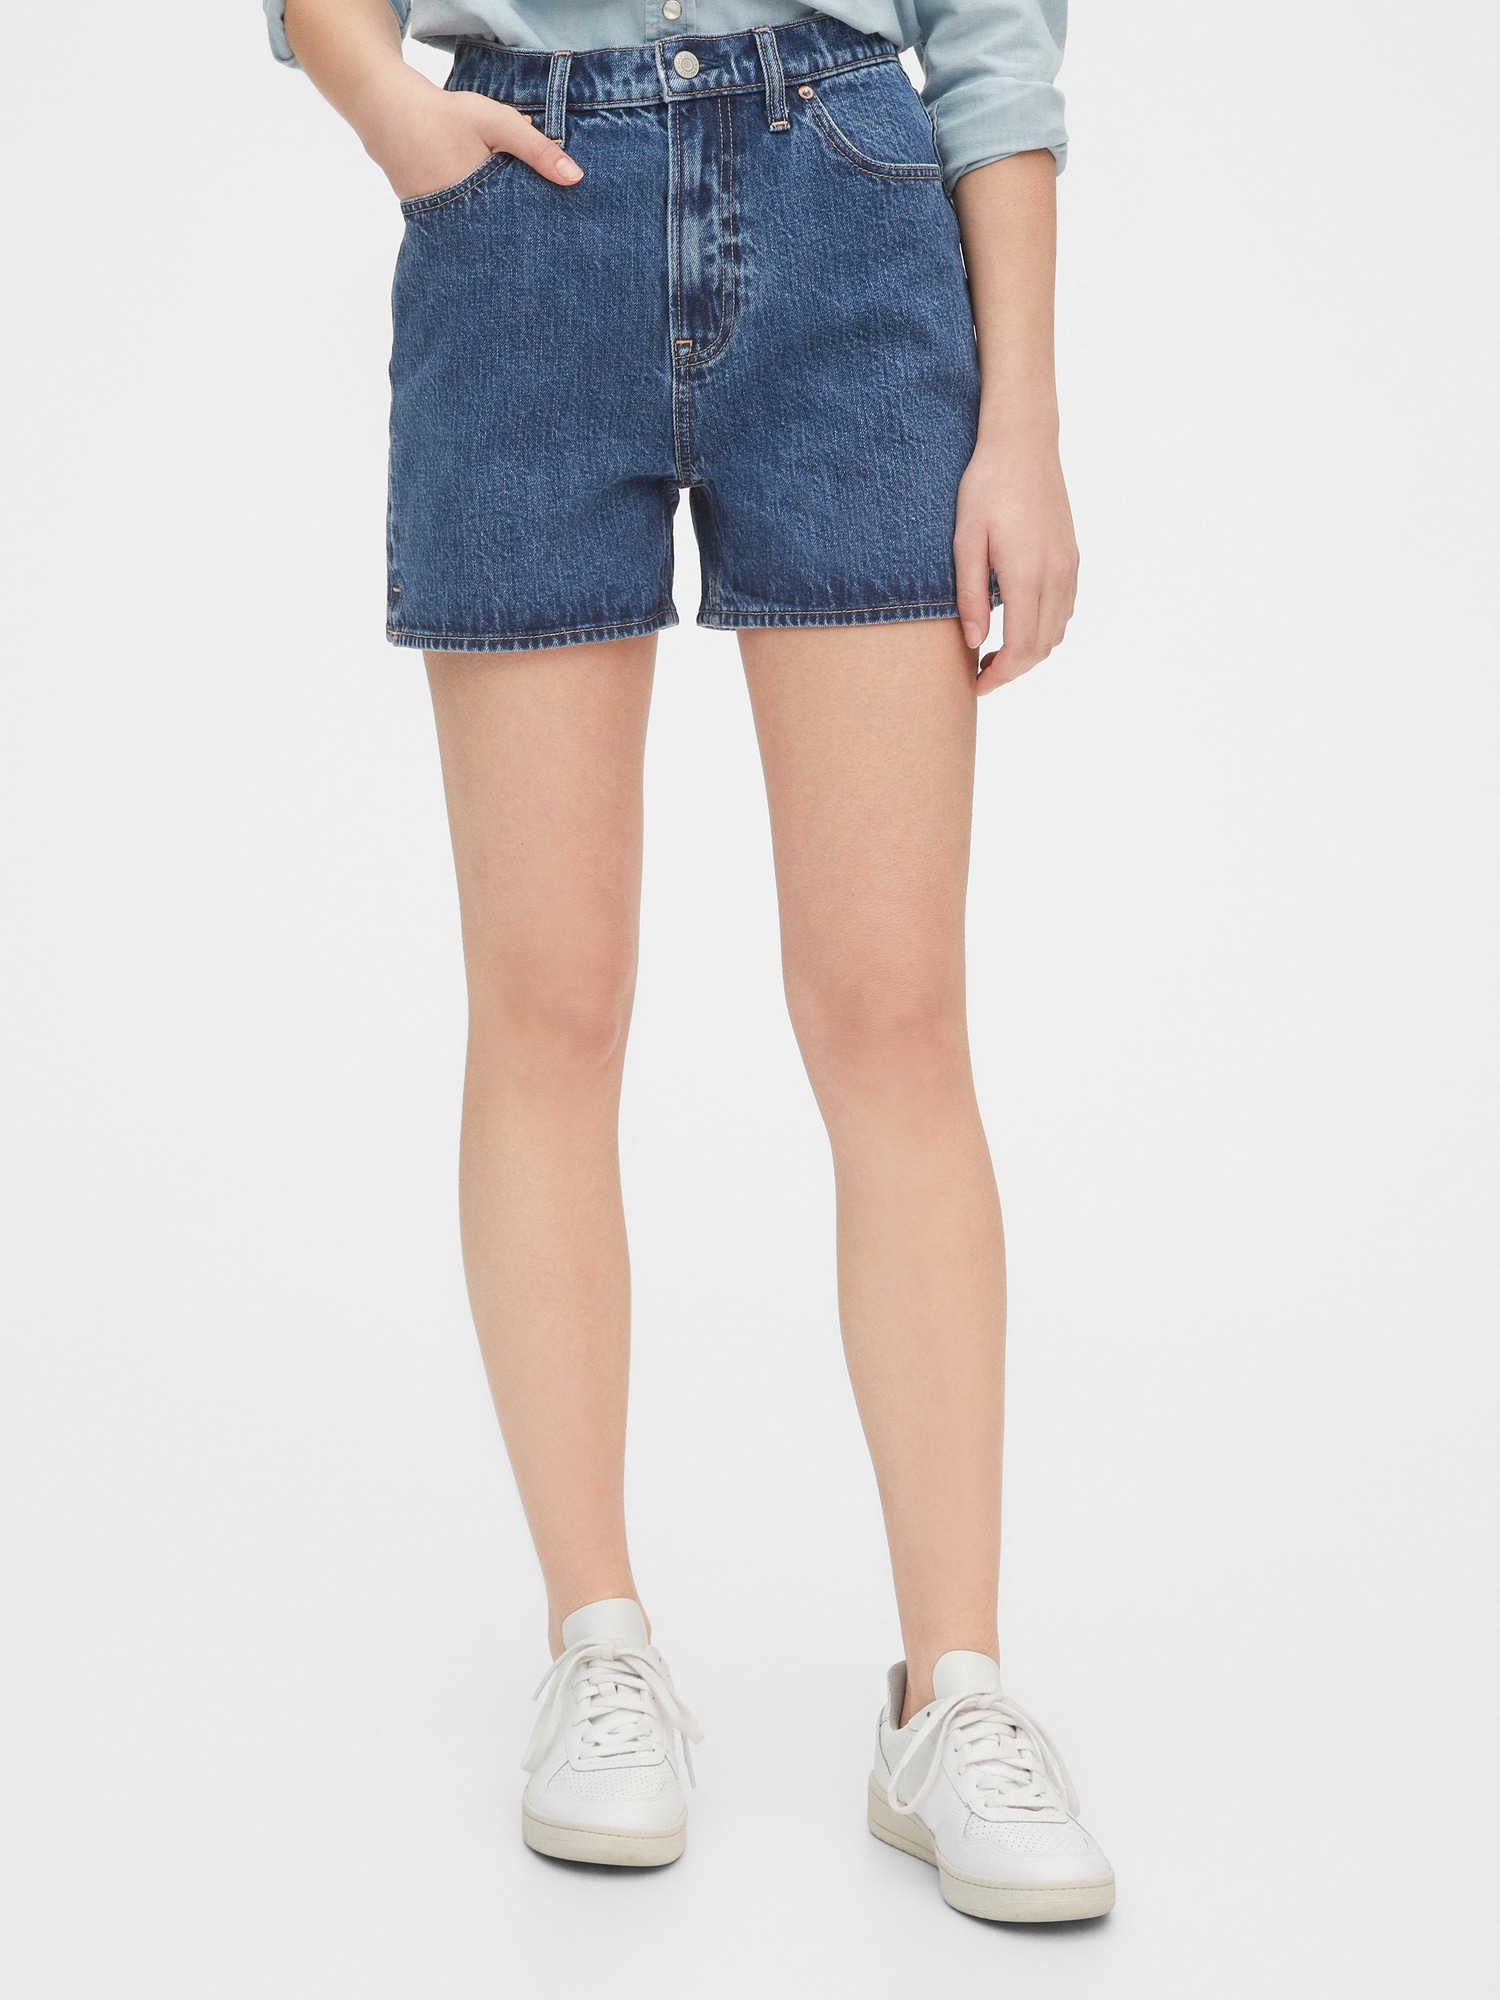 mum jean shorts